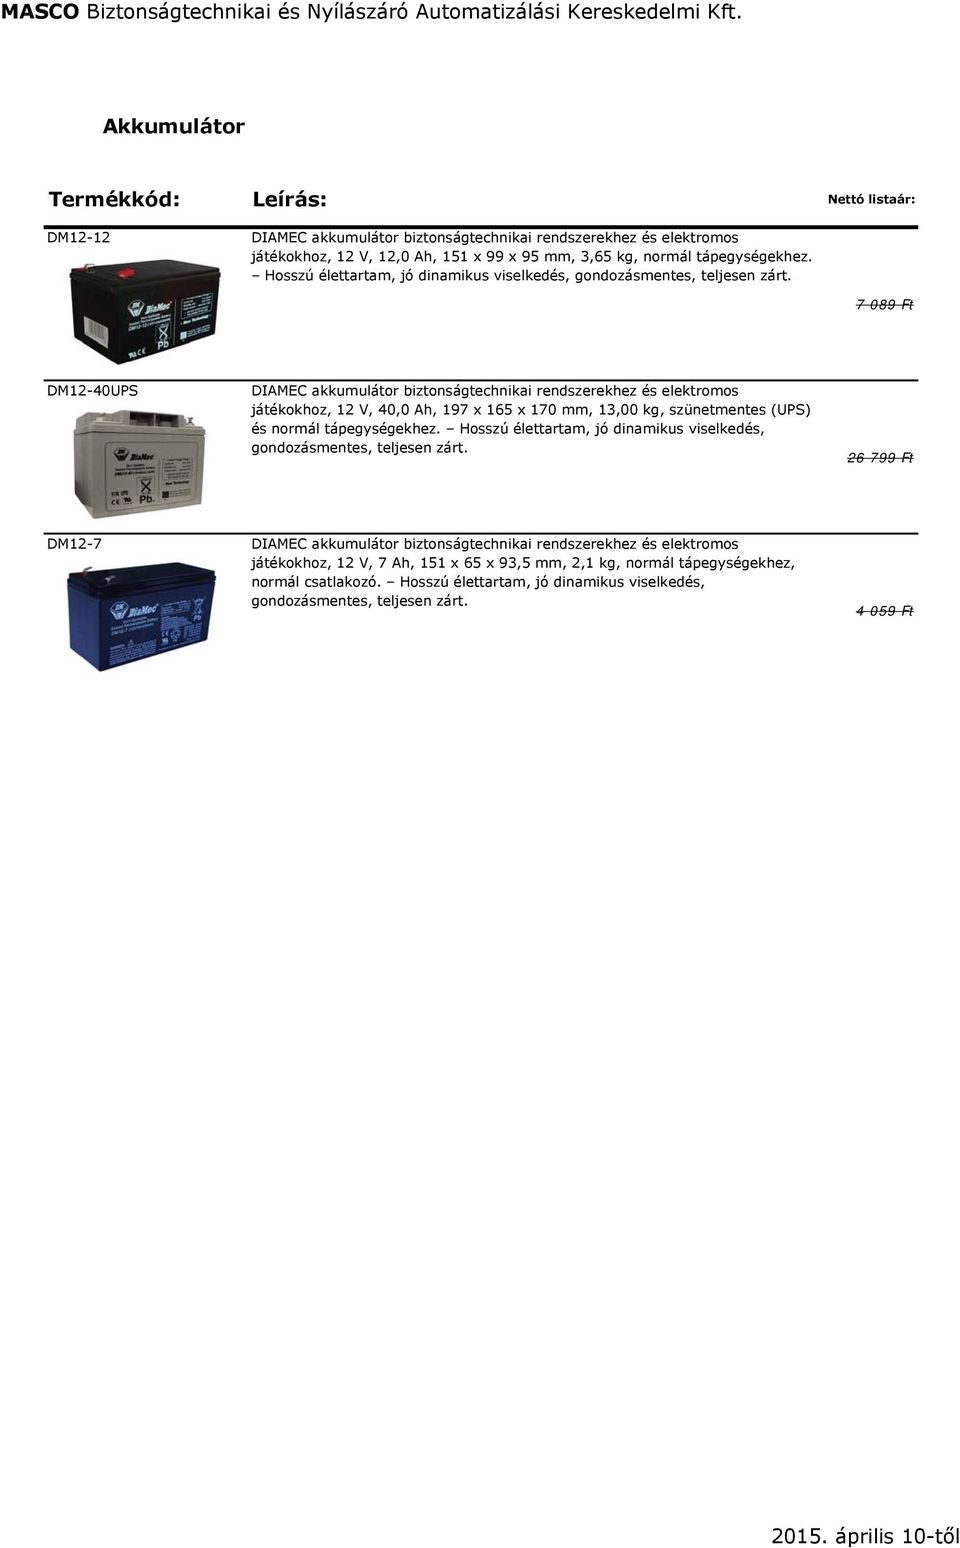 7 089 Ft DM12-40UPS DIAMEC akkumulátor biztonságtechnikai rendszerekhez és elektromos játékokhoz, 12 V, 40,0 Ah, 197 x 165 x 170 mm, 13,00 kg, szünetmentes (UPS) és normál tápegységekhez.